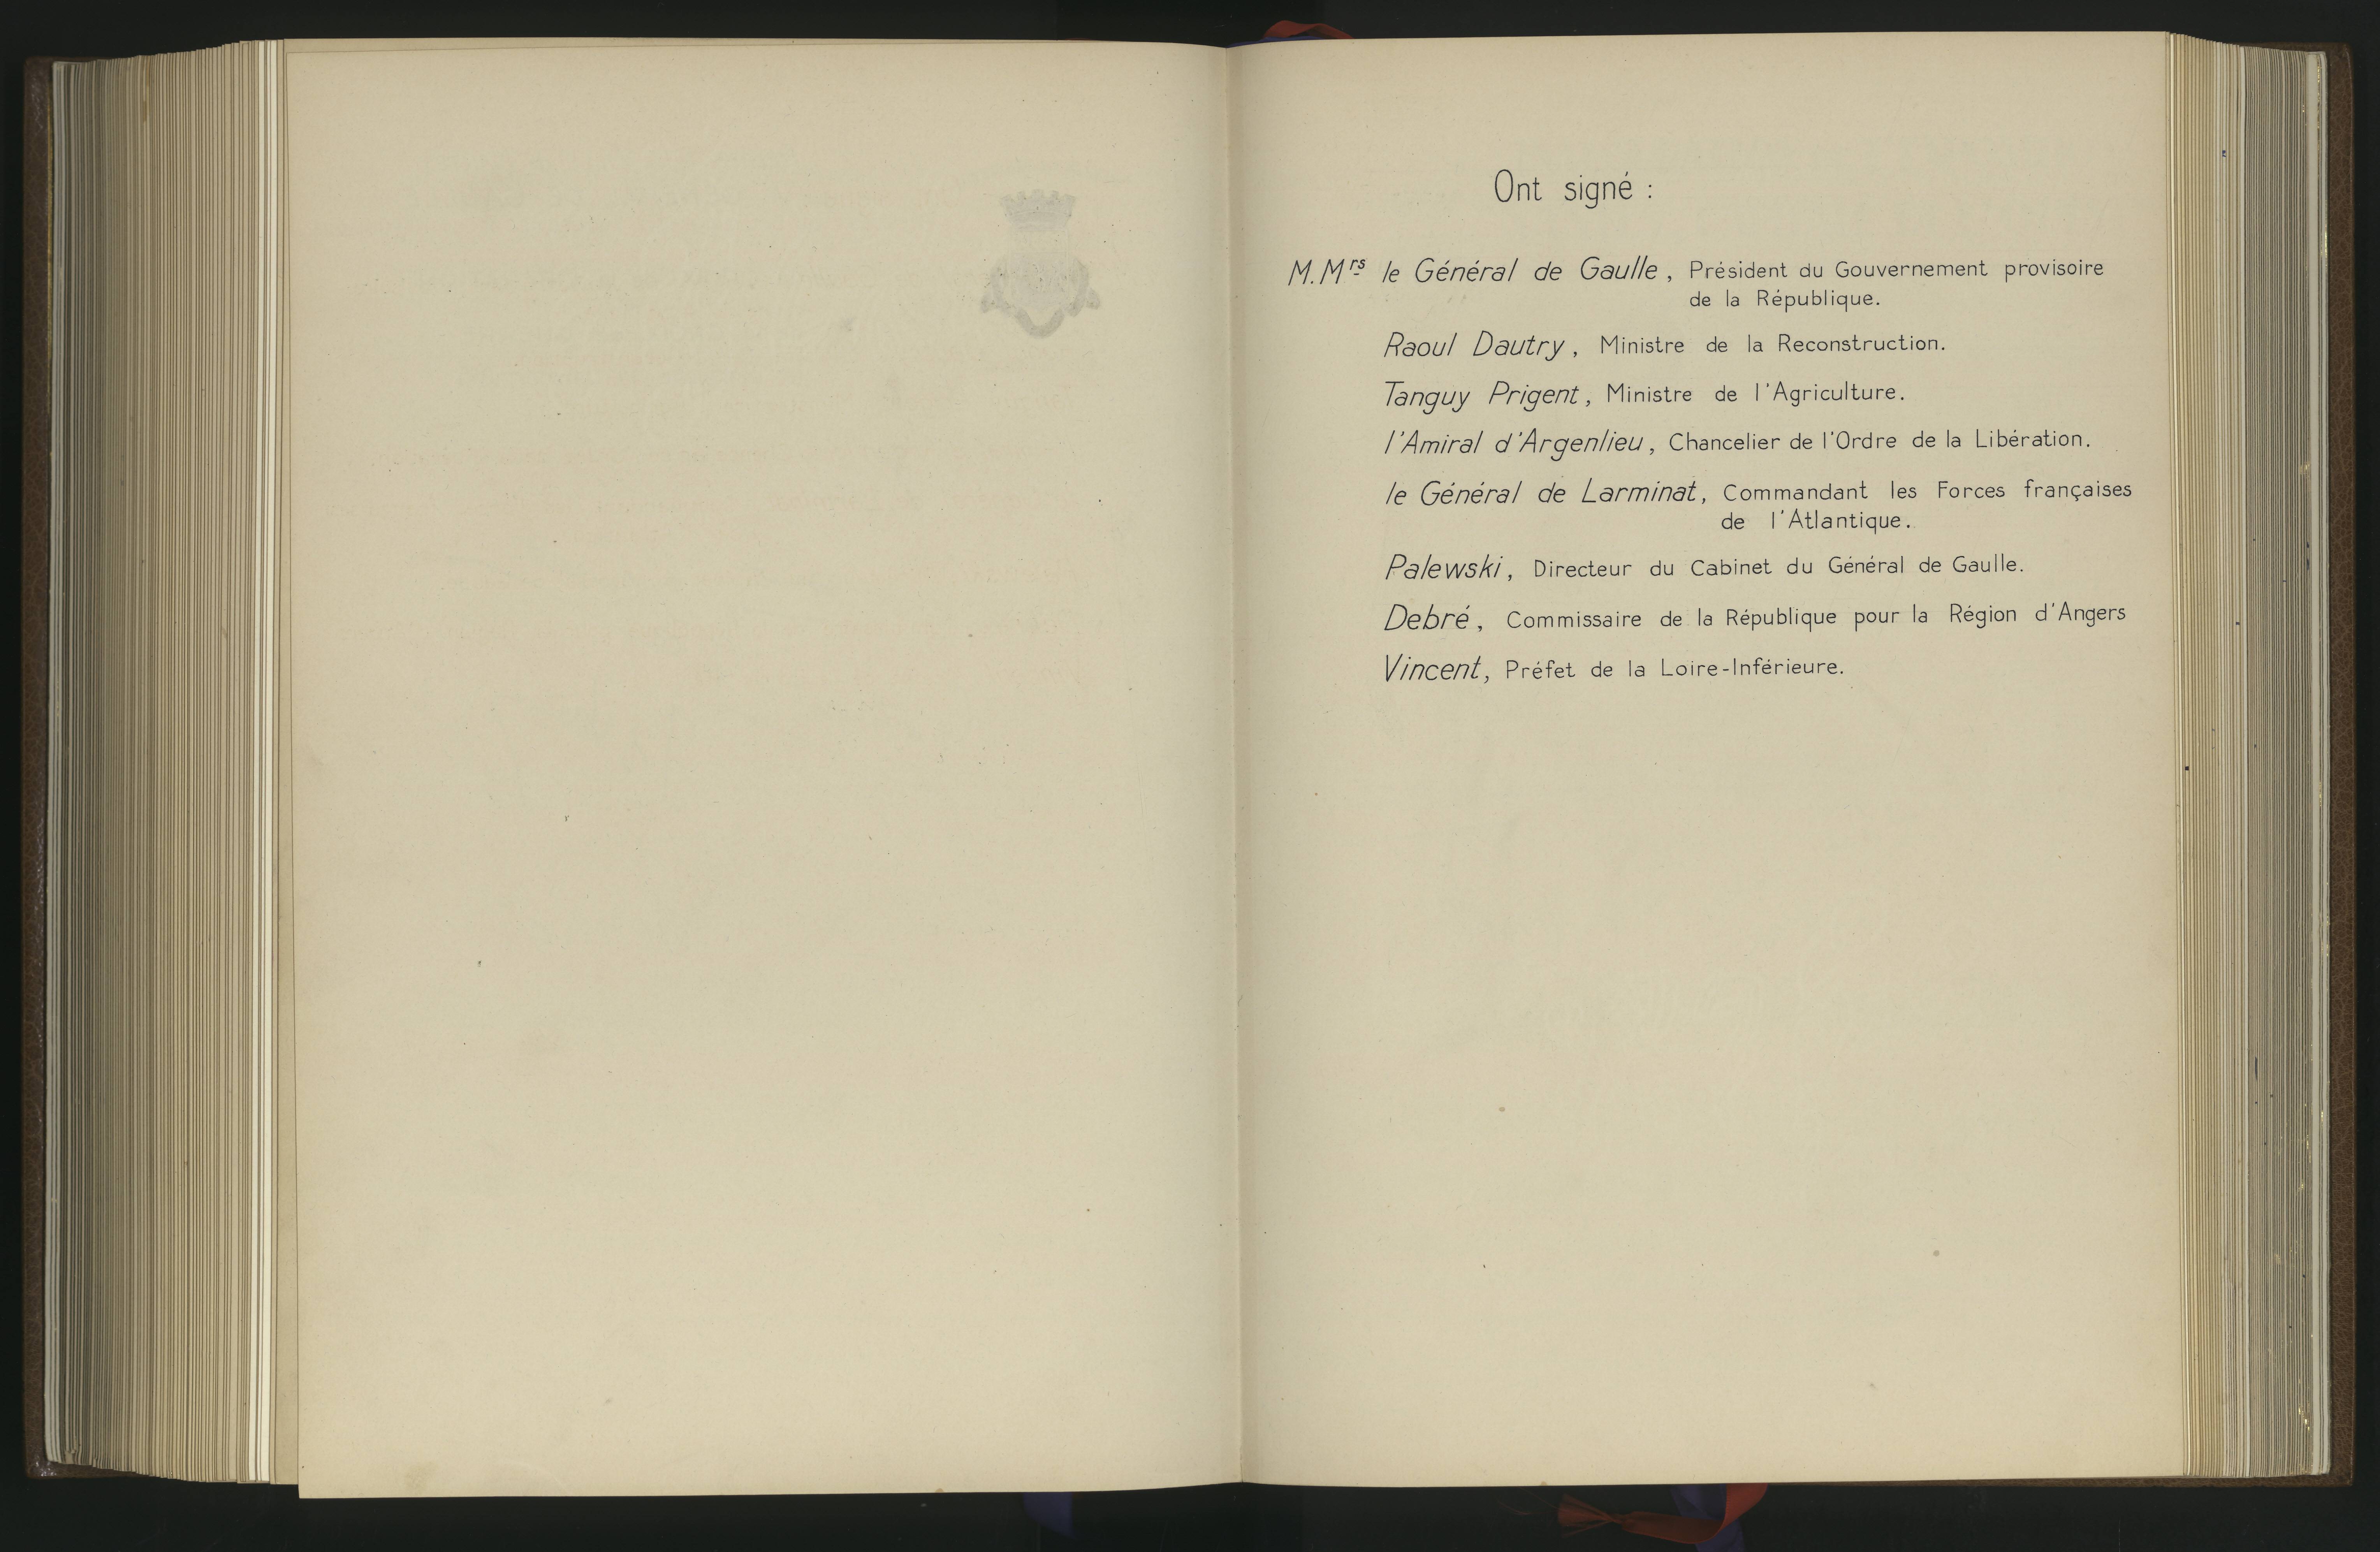 Page extraite du Livre d'or de la Ville de Nantes, dédiée à la visite de Charles de Gaulle le 14 janvier 1945 (1597W)